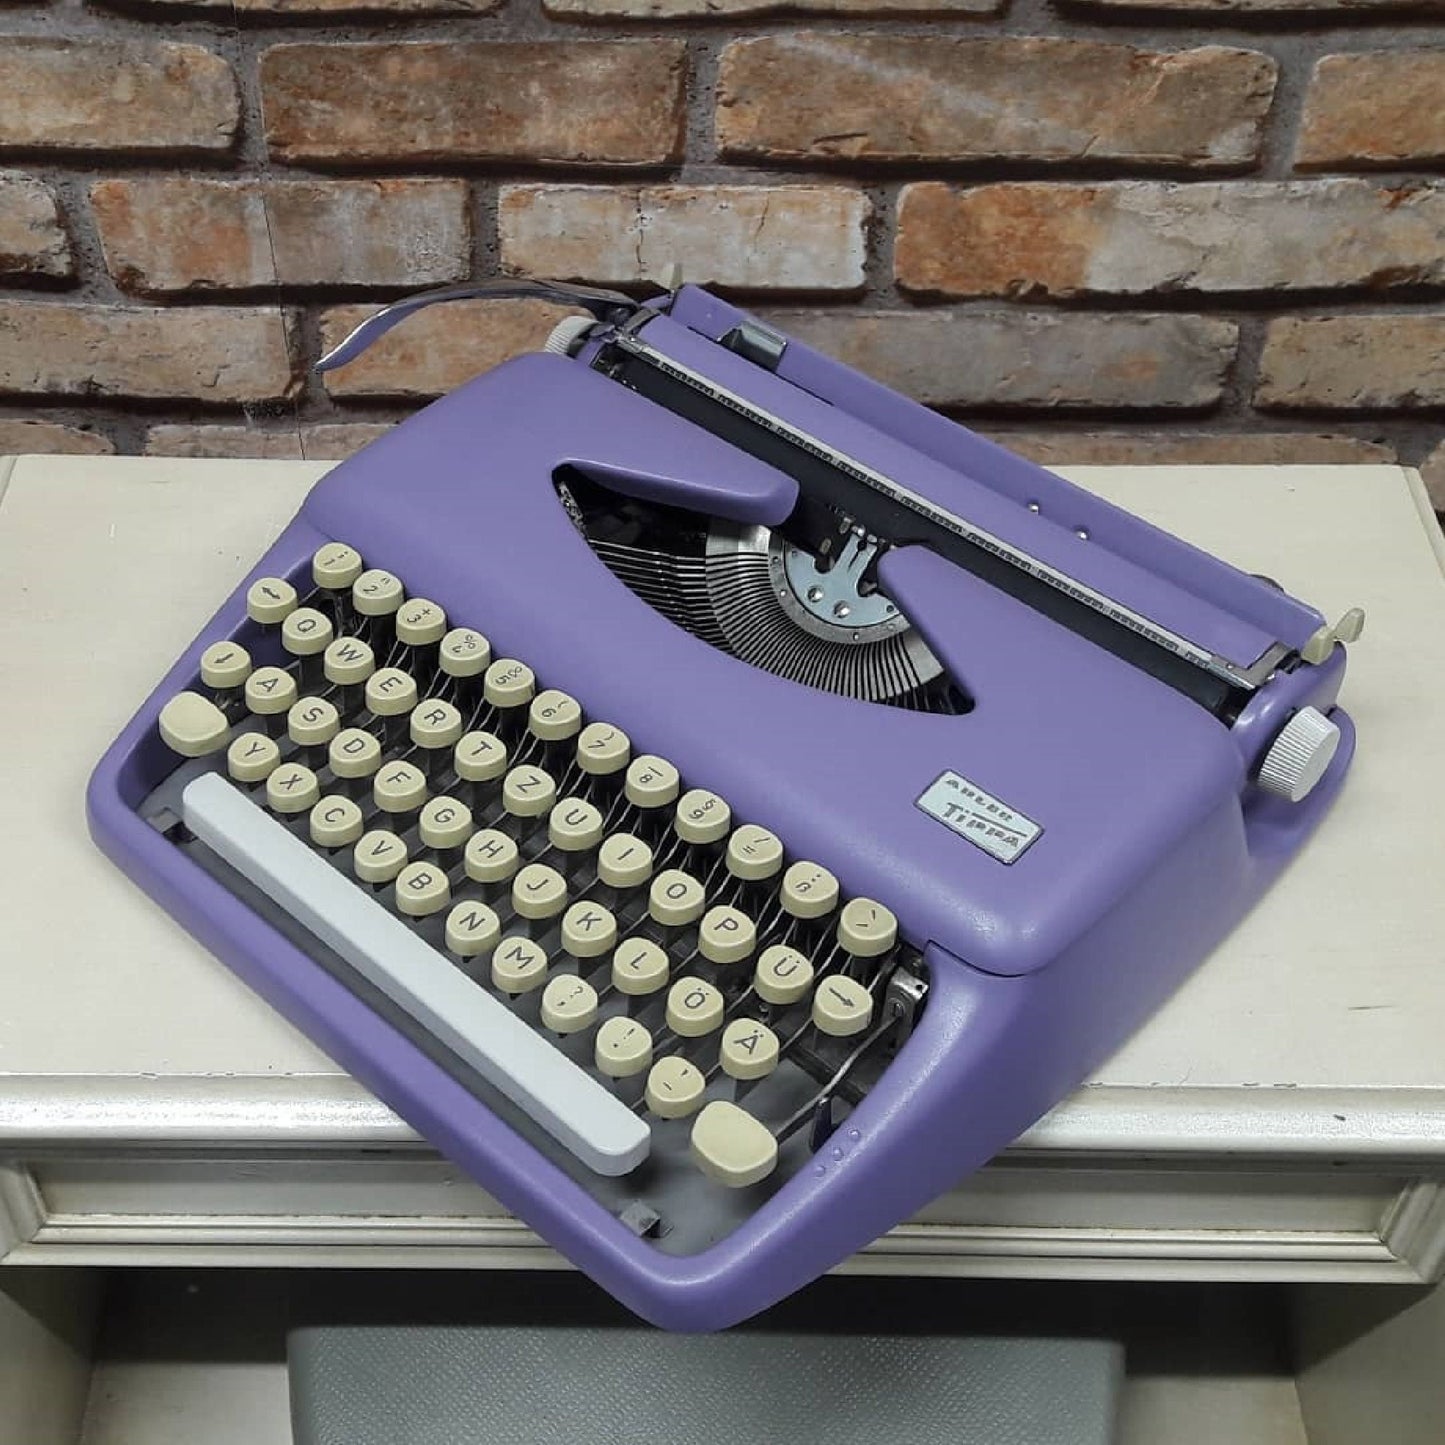 Adler Tippa S Typewriter | Tippa S Typewriter | Special Tippa S Typewriter,typewriter working